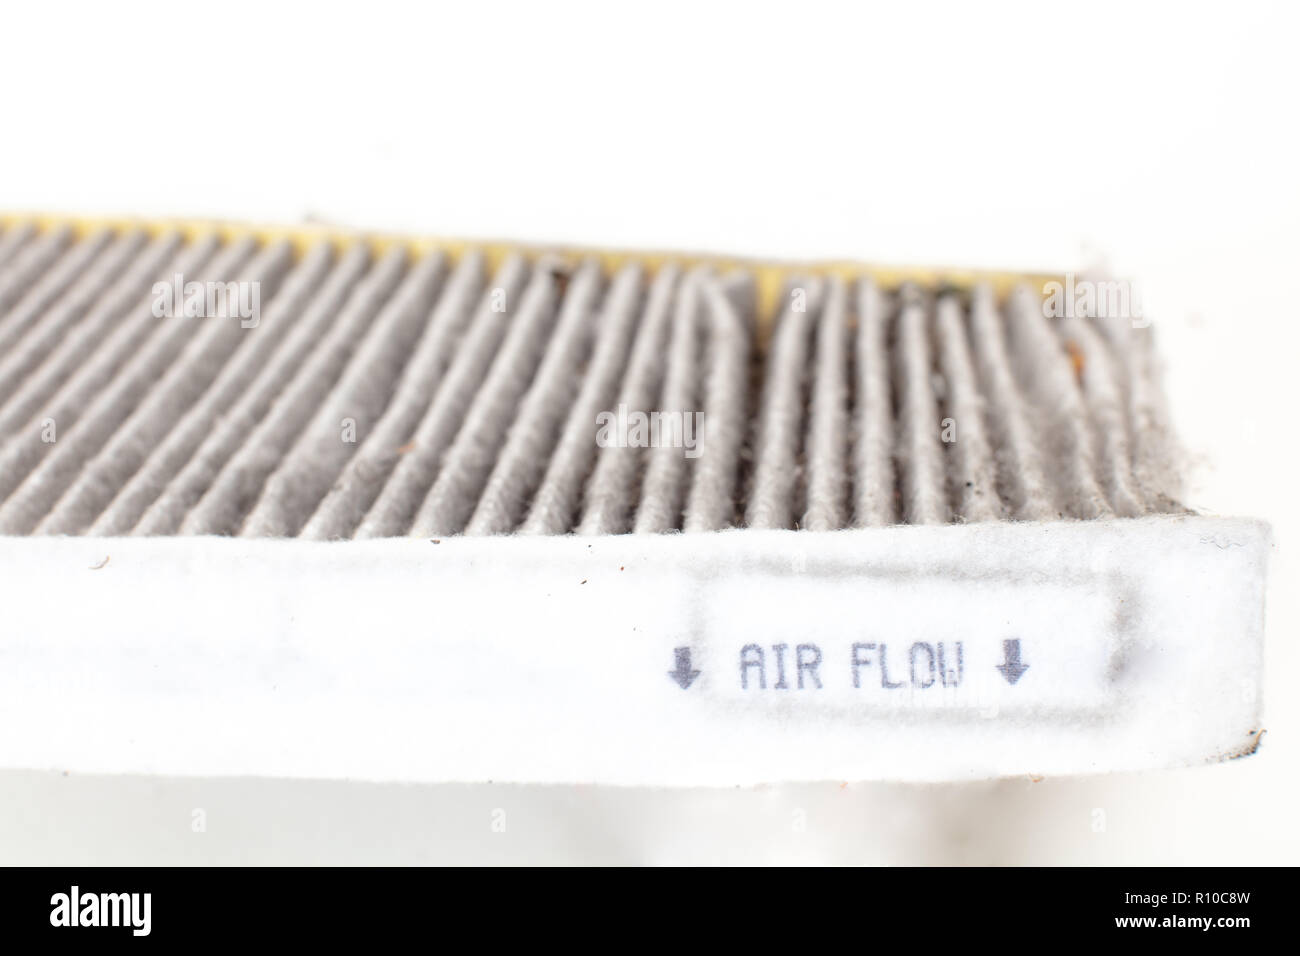 Ändern eines Auto cabin Pollenfilter. Hohe efficiety Partikelfilter  Luftfilter. (Alte) weißen Hintergrund Ausschnitt Stockfotografie - Alamy